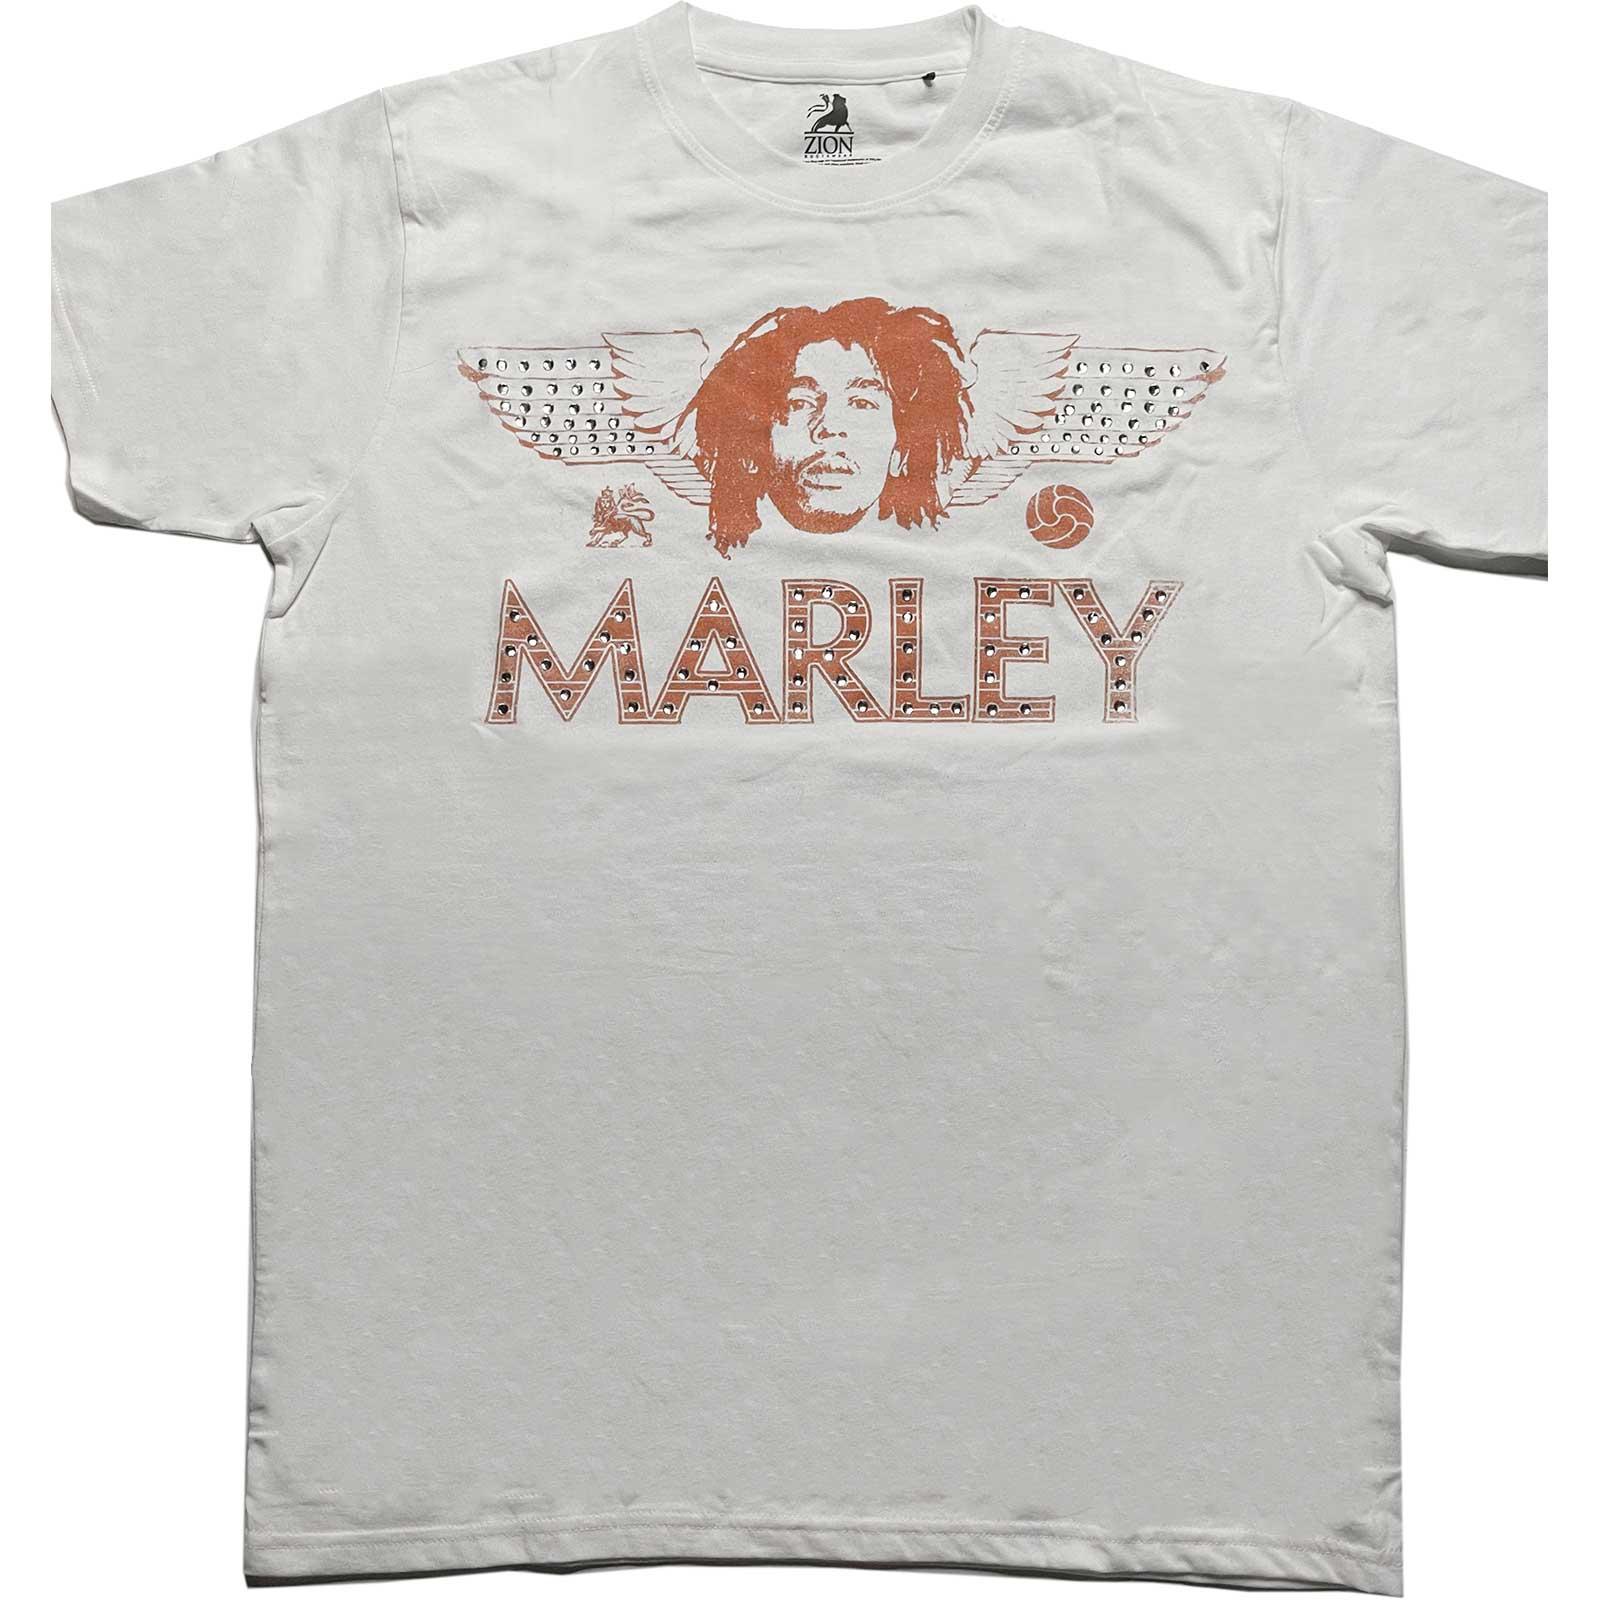 (ボブ・マーリー) Bob Marley オフィシャル商品 ユニセックス Wings Embellished Tシャツ 半袖 トップス 